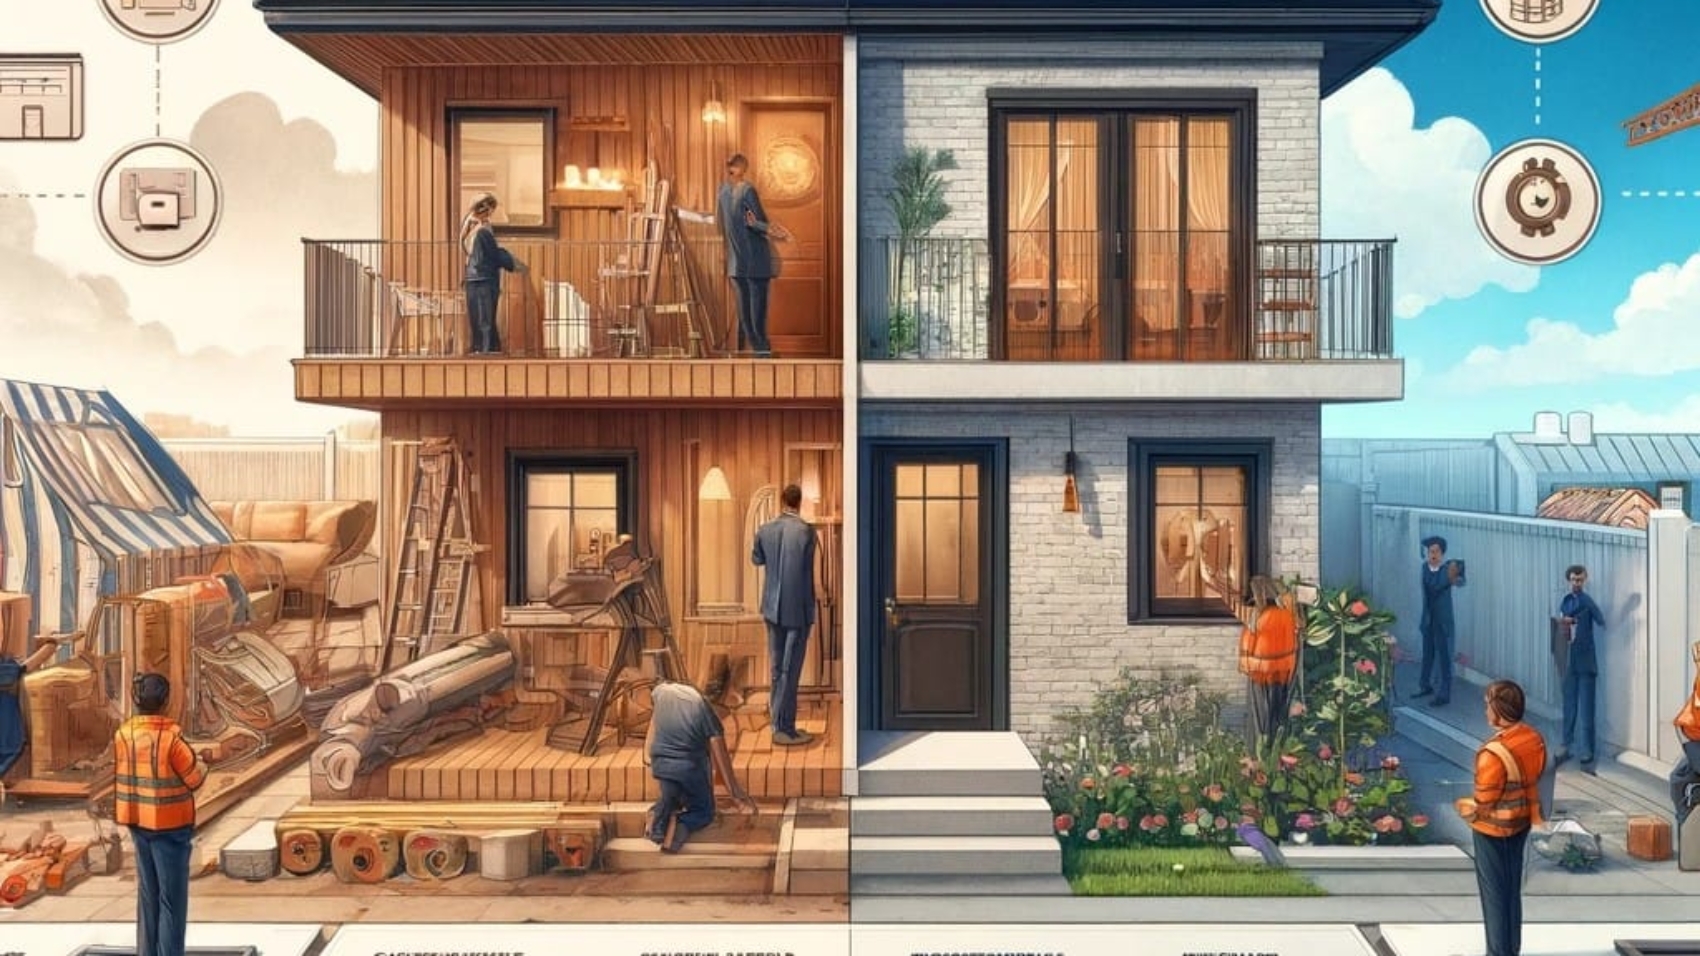 A imagem descreve a diferença entre uma administradora de obra e uma construtora de obra residencial em Jundiaí. Mostrando as vantagens da administração de obras